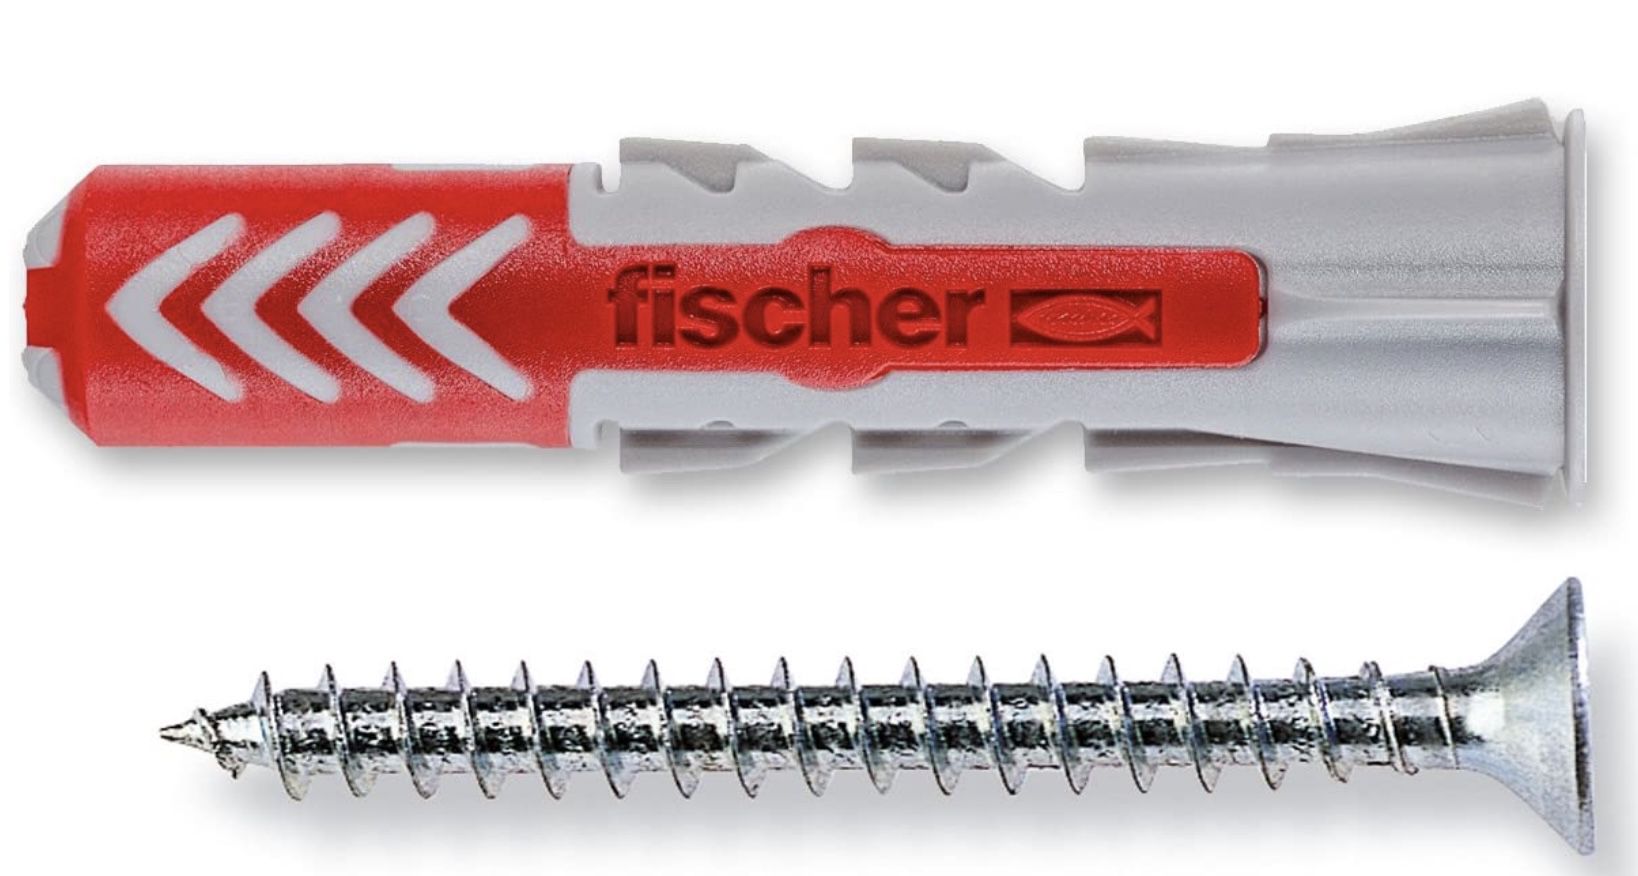 25 x Fischer Dübel Duopower mit Schraube für 8,60€ (statt 10€)   Prime